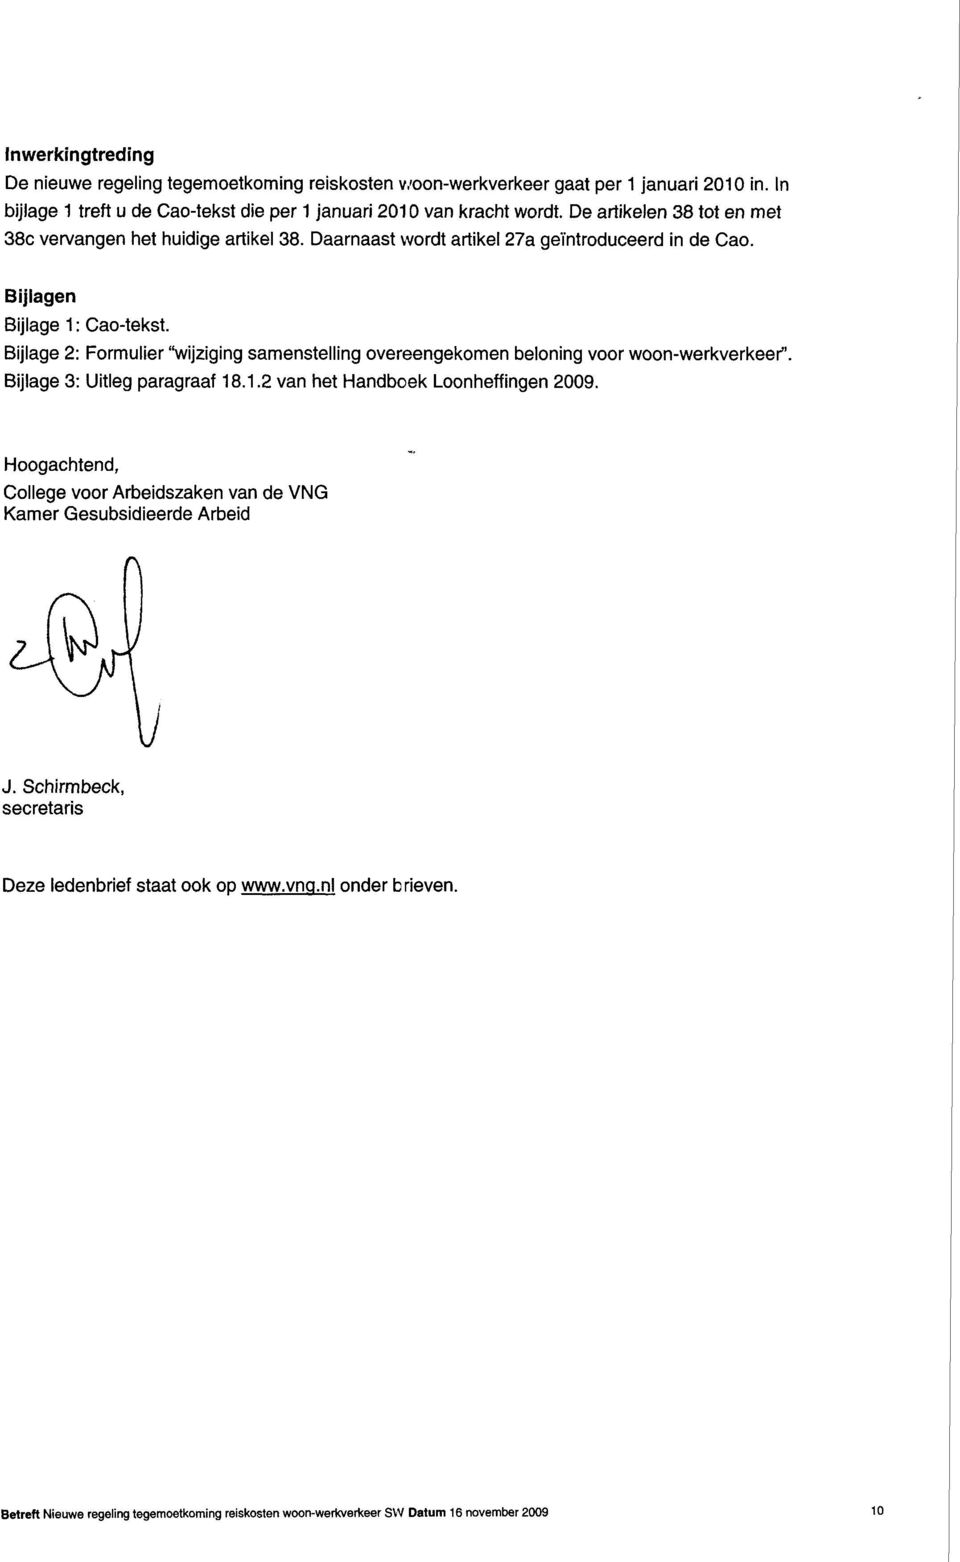 Bijlage 2: Formulier "wijziging samenstelling overeengekomen beloning voor woon-werkverkeer". Bijlage 3: Uitleg paragraaf 18.1.2 van het Handboek Loonheffingen 2009.